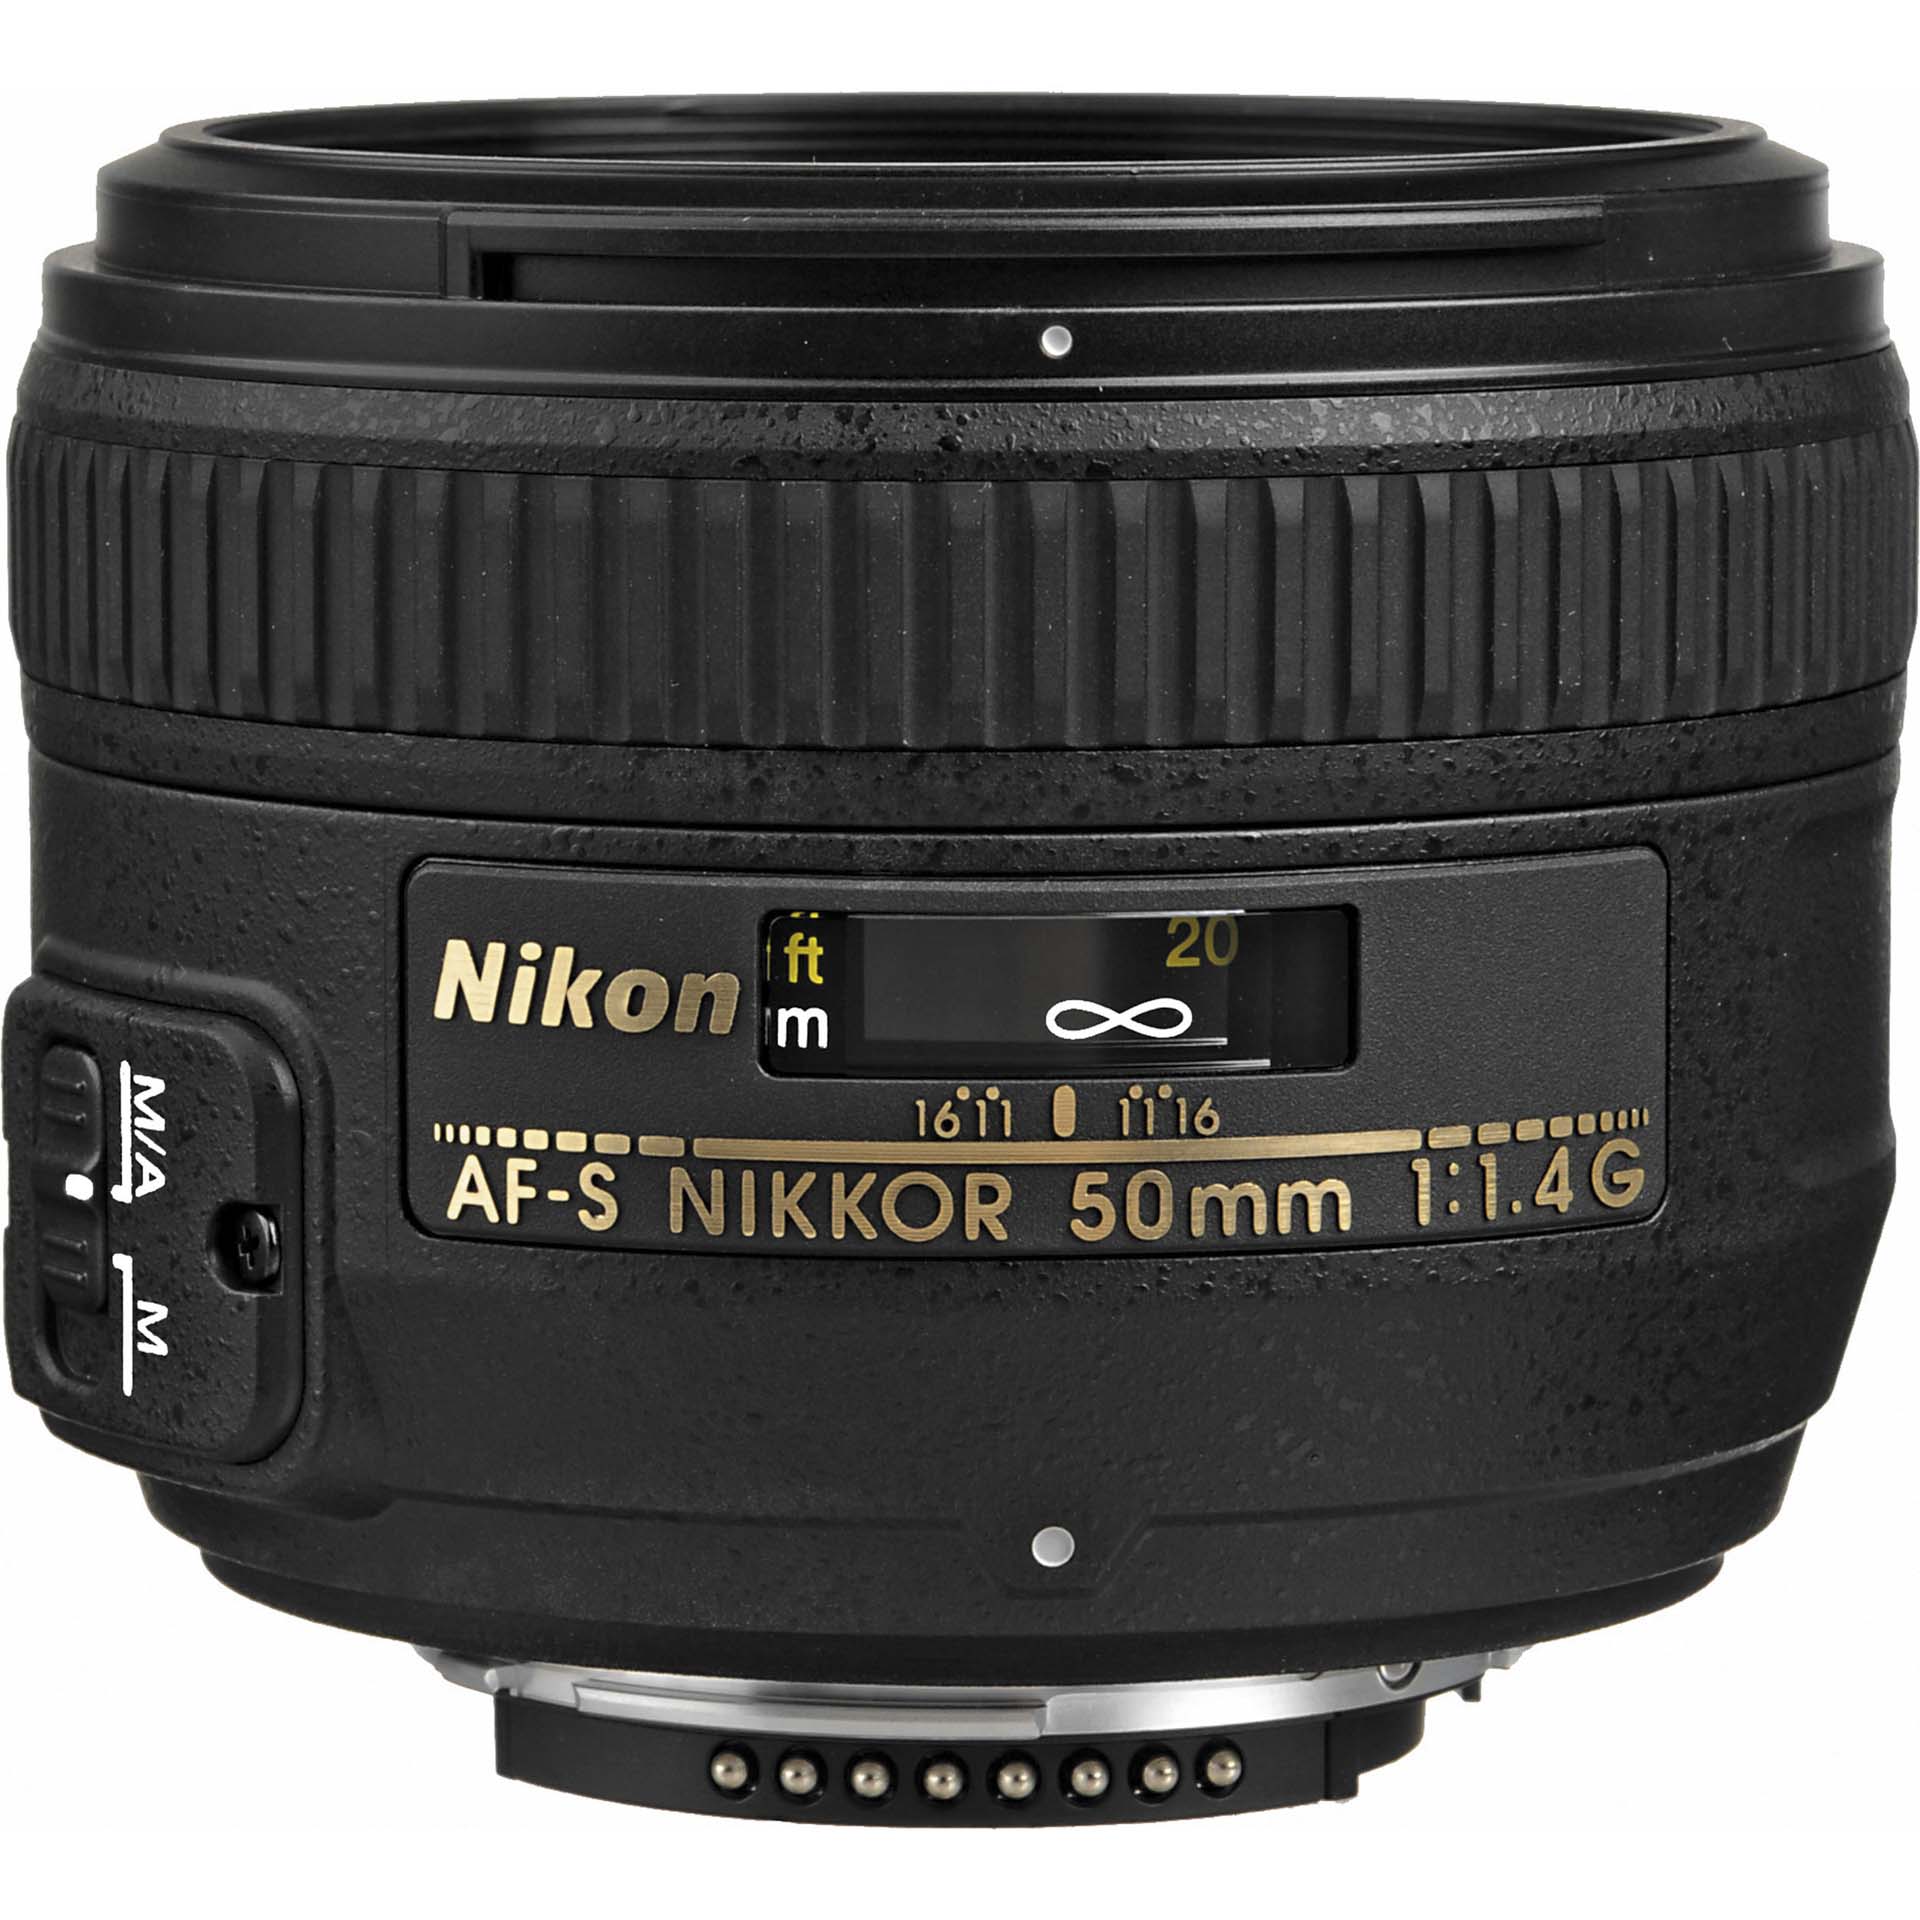 The Nikkor 50mm 1.4 G lens